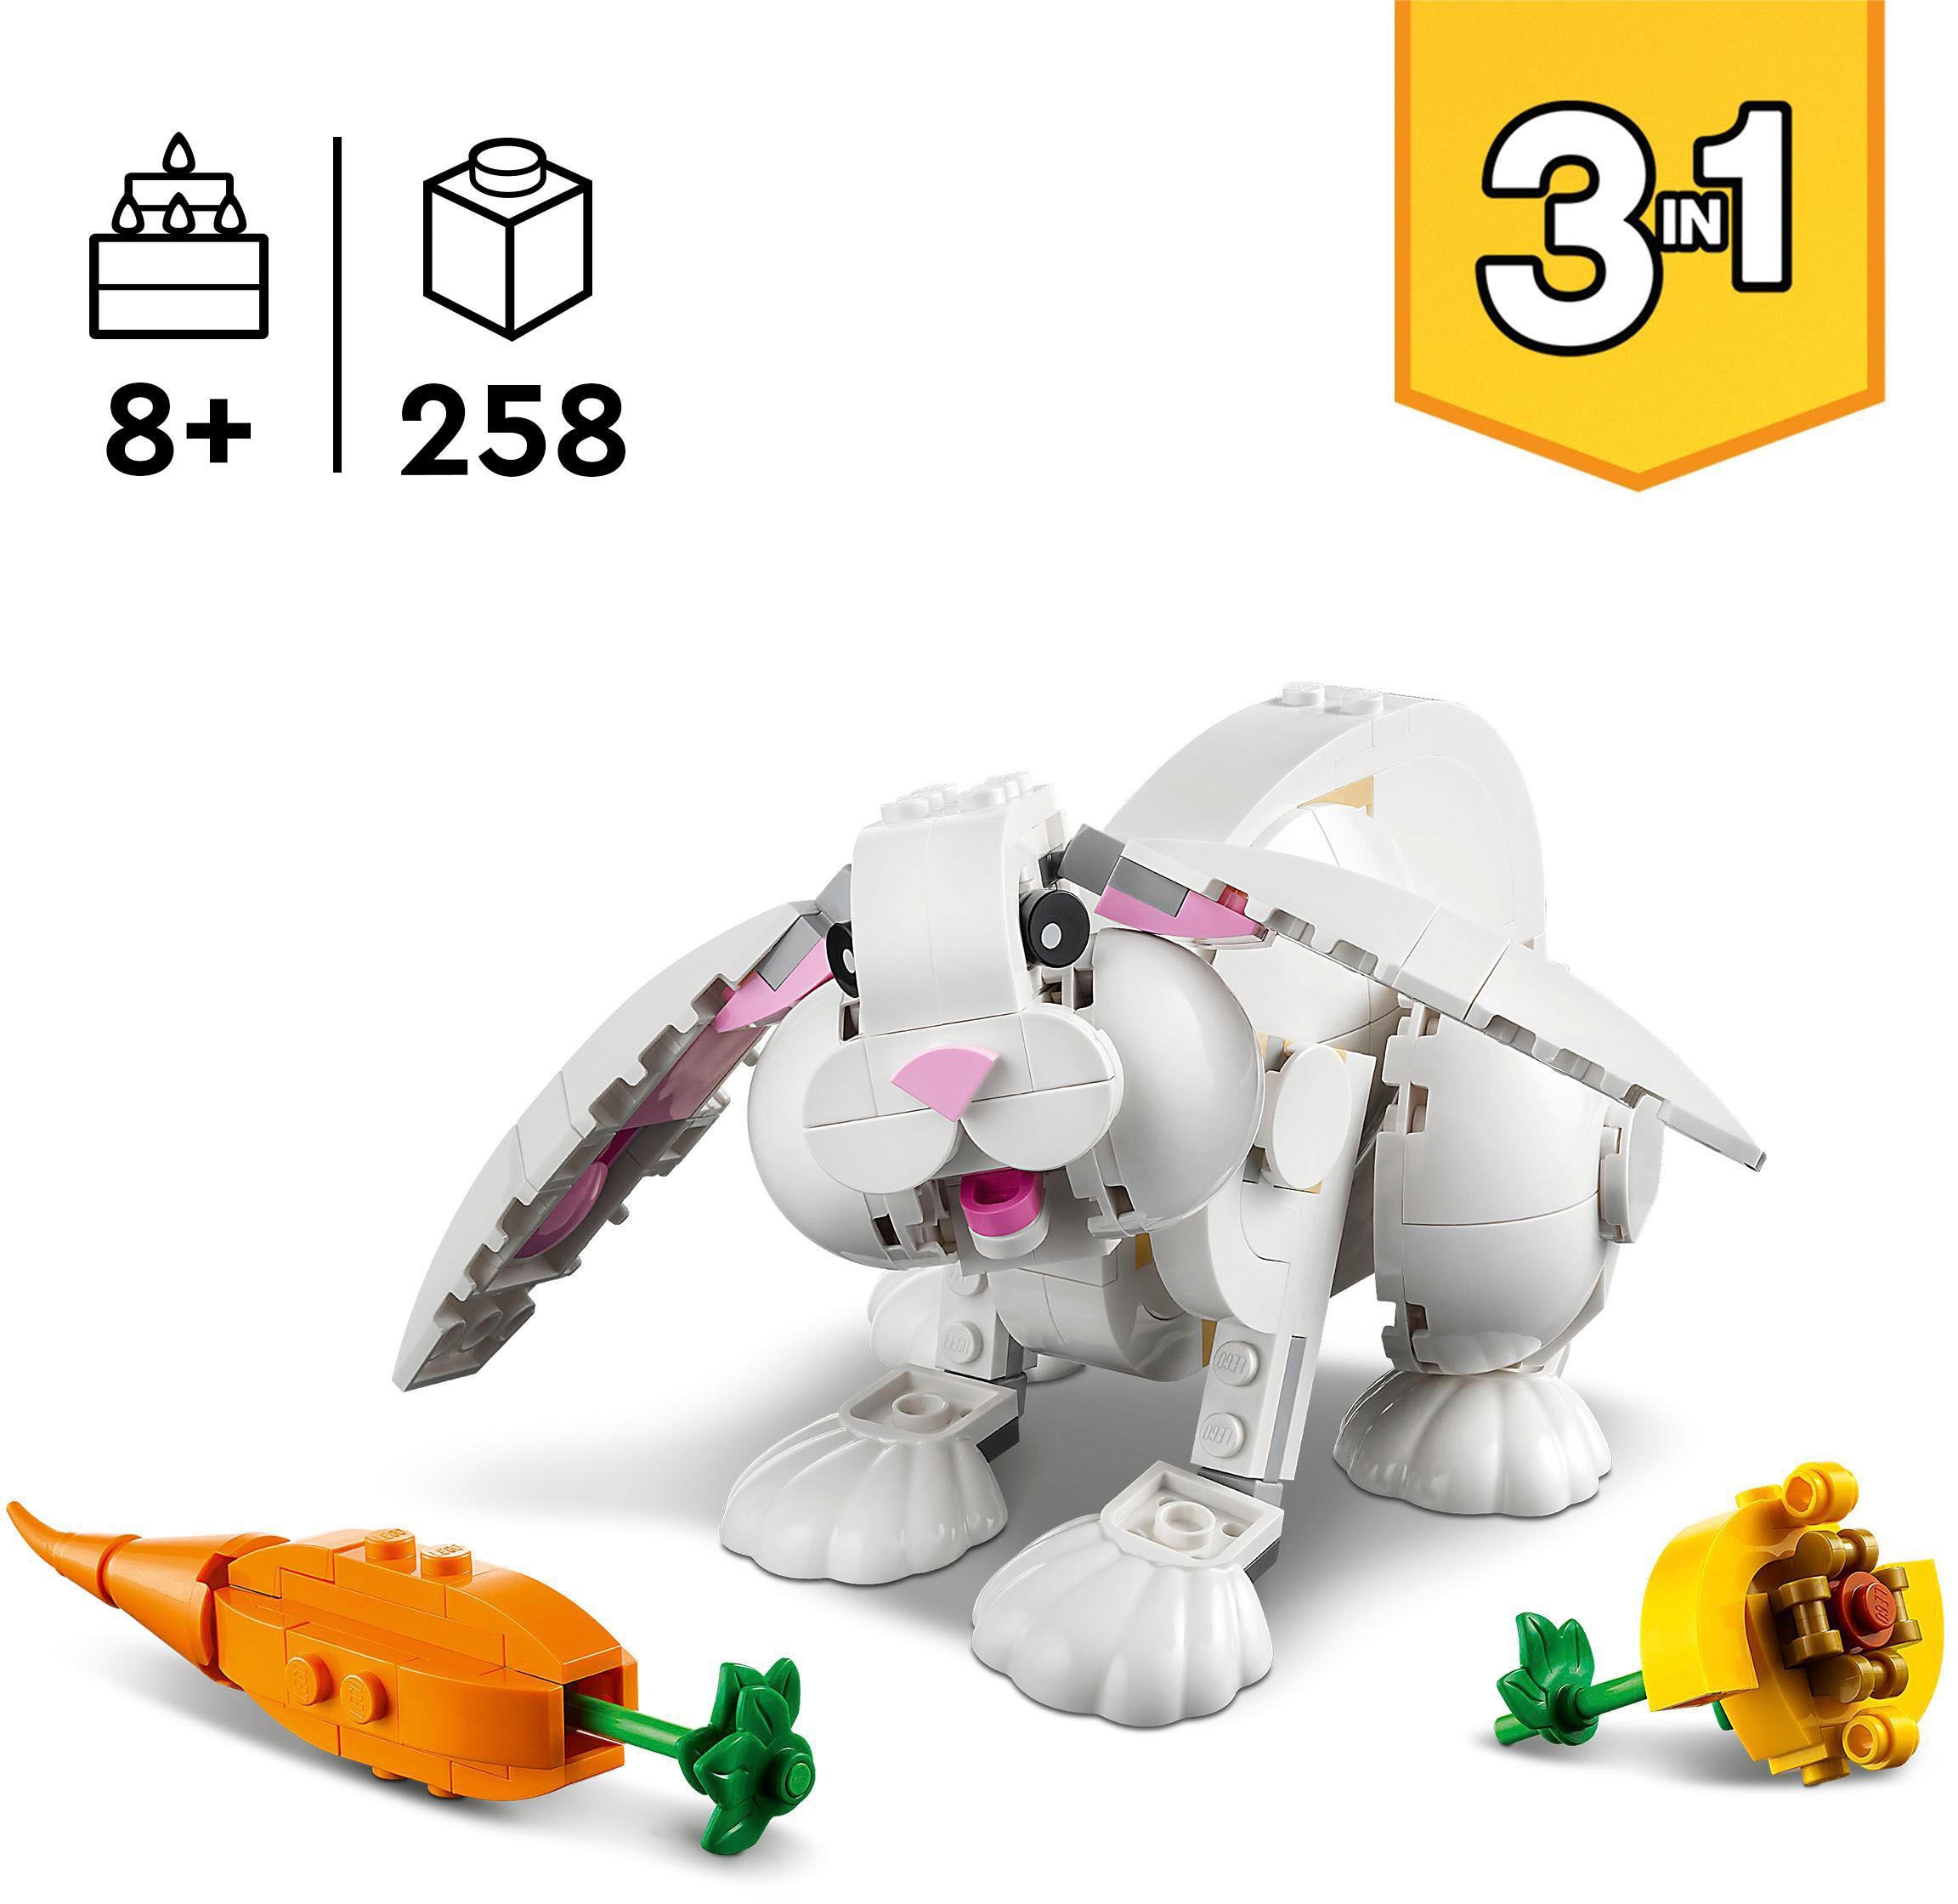 LEGO® Konstruktionsspielsteine »Weisser Hase (31133), LEGO® Creator 3in1«, (258 St.), Made in Europe